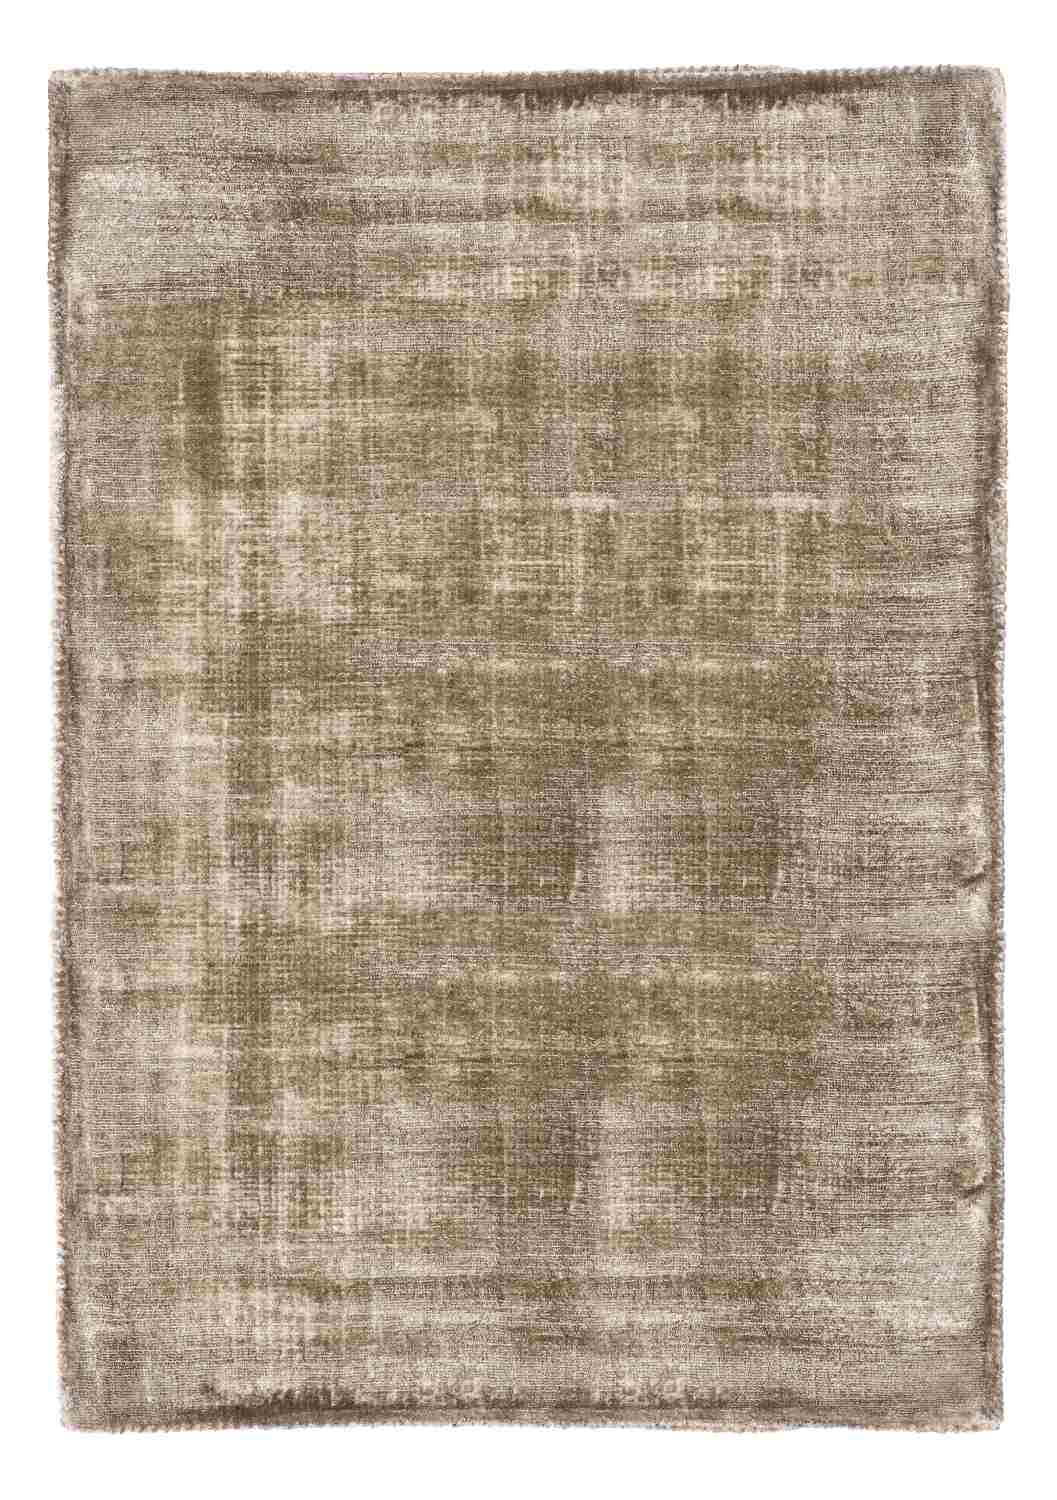 Der Teppich Rashmi überzeugt mit seinem modernen Design. Gefertigt wurde die Vorderseite aus Viskose und die Rückseite aus Baumwolle. Der Teppich besitzt eine braunen Farbton und die Maße von 160x230 cm.